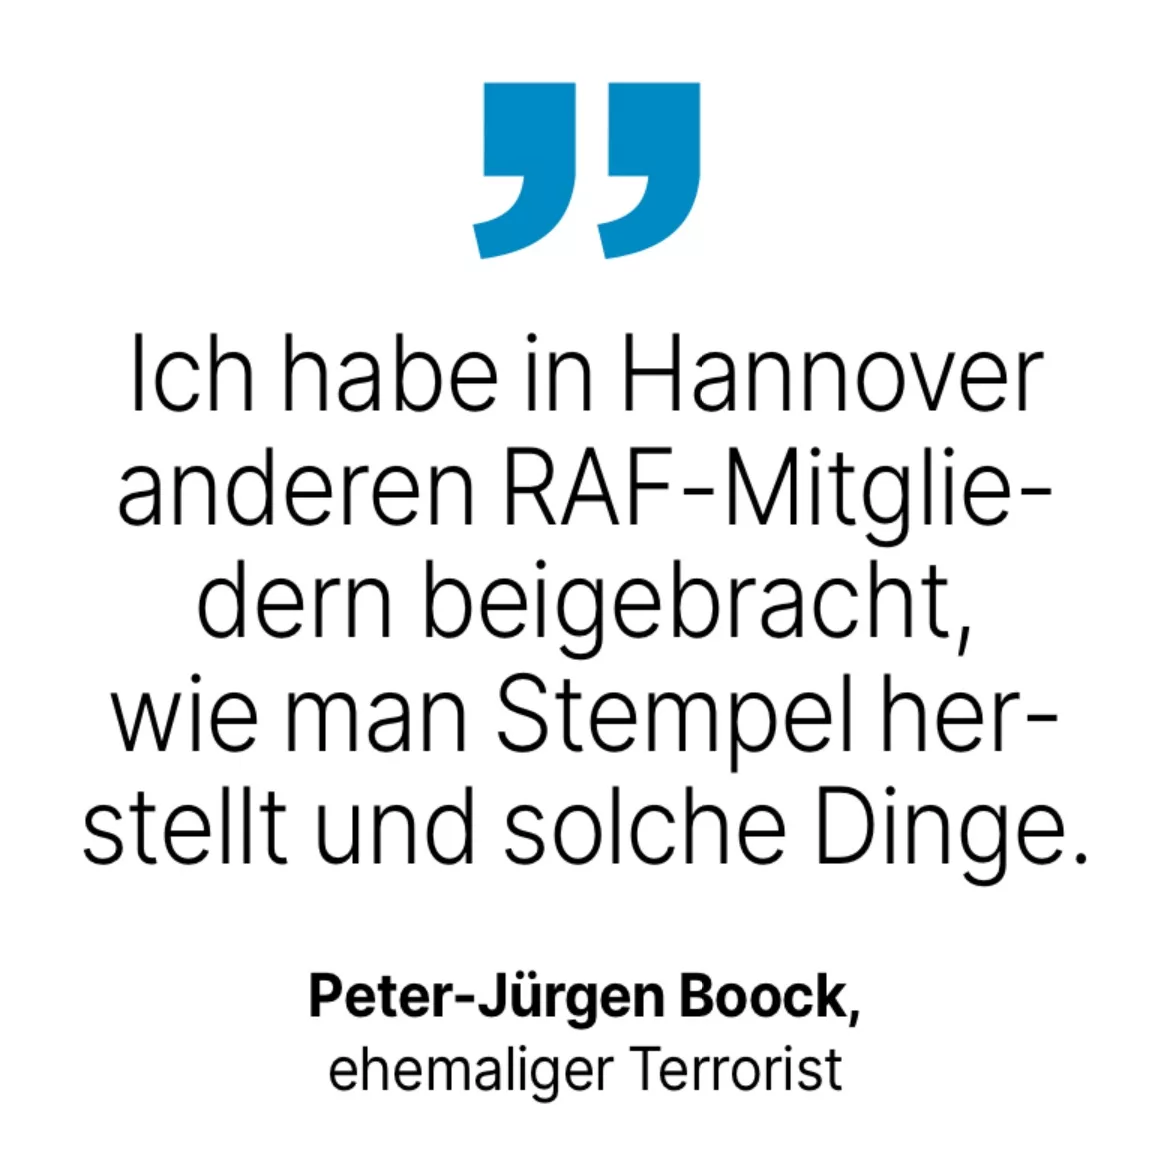 Peter-Jürgen Boock, ehemaliger Terrorist: Ich habe in Hannover anderen RAF-Mitglie-dern beigebracht, wie man Stempel herstellt und solche Dinge.